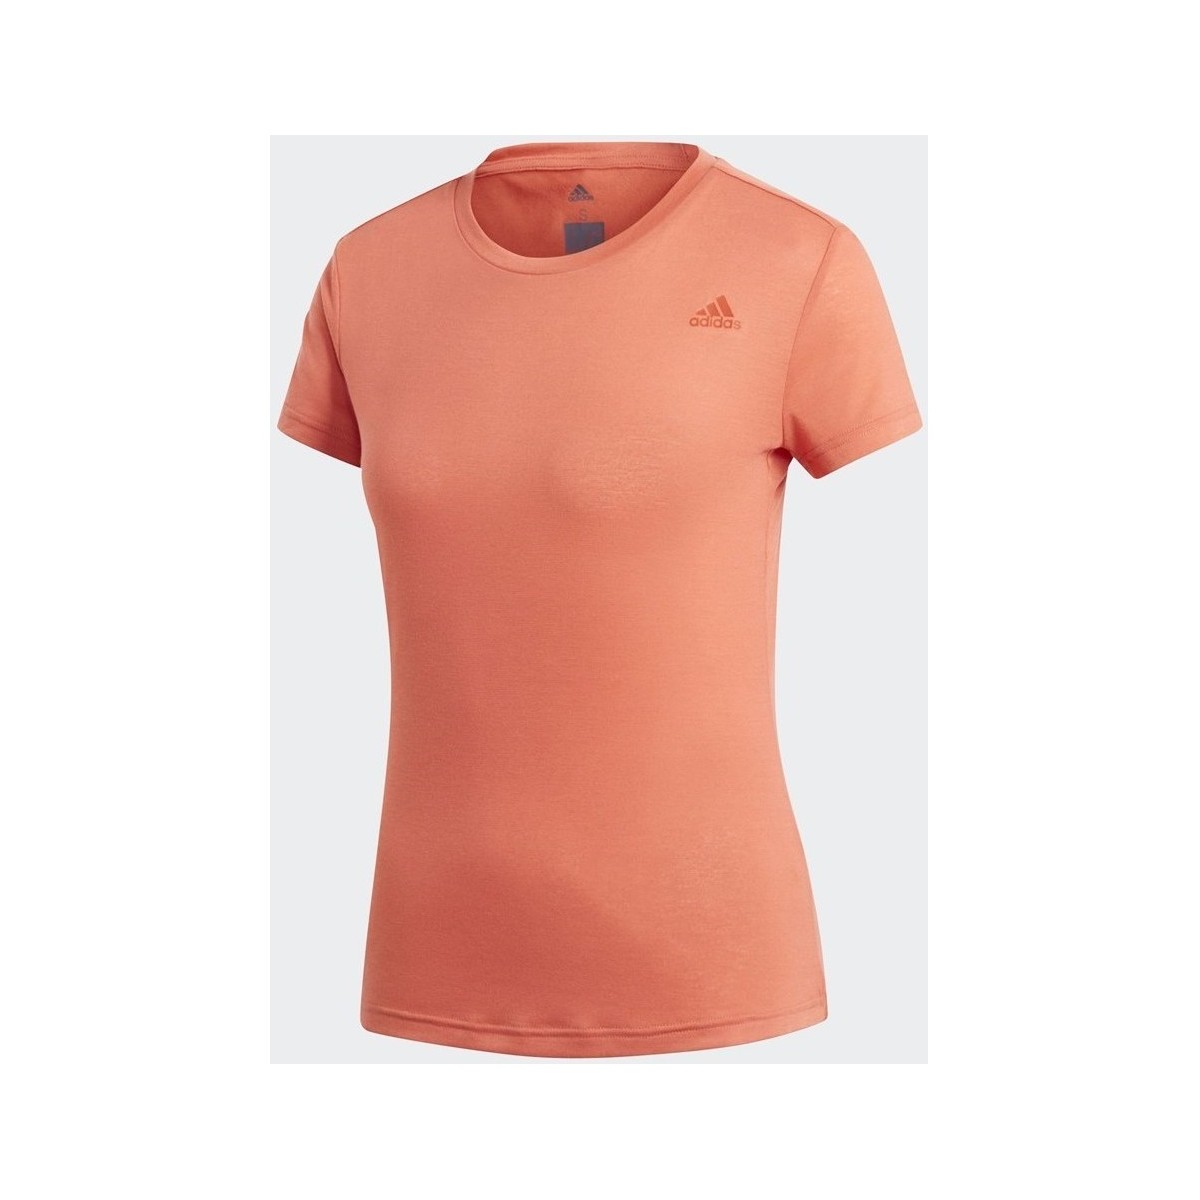 Vêtements Femme T-shirts manches courtes adidas Originals Freelift Prime Orange